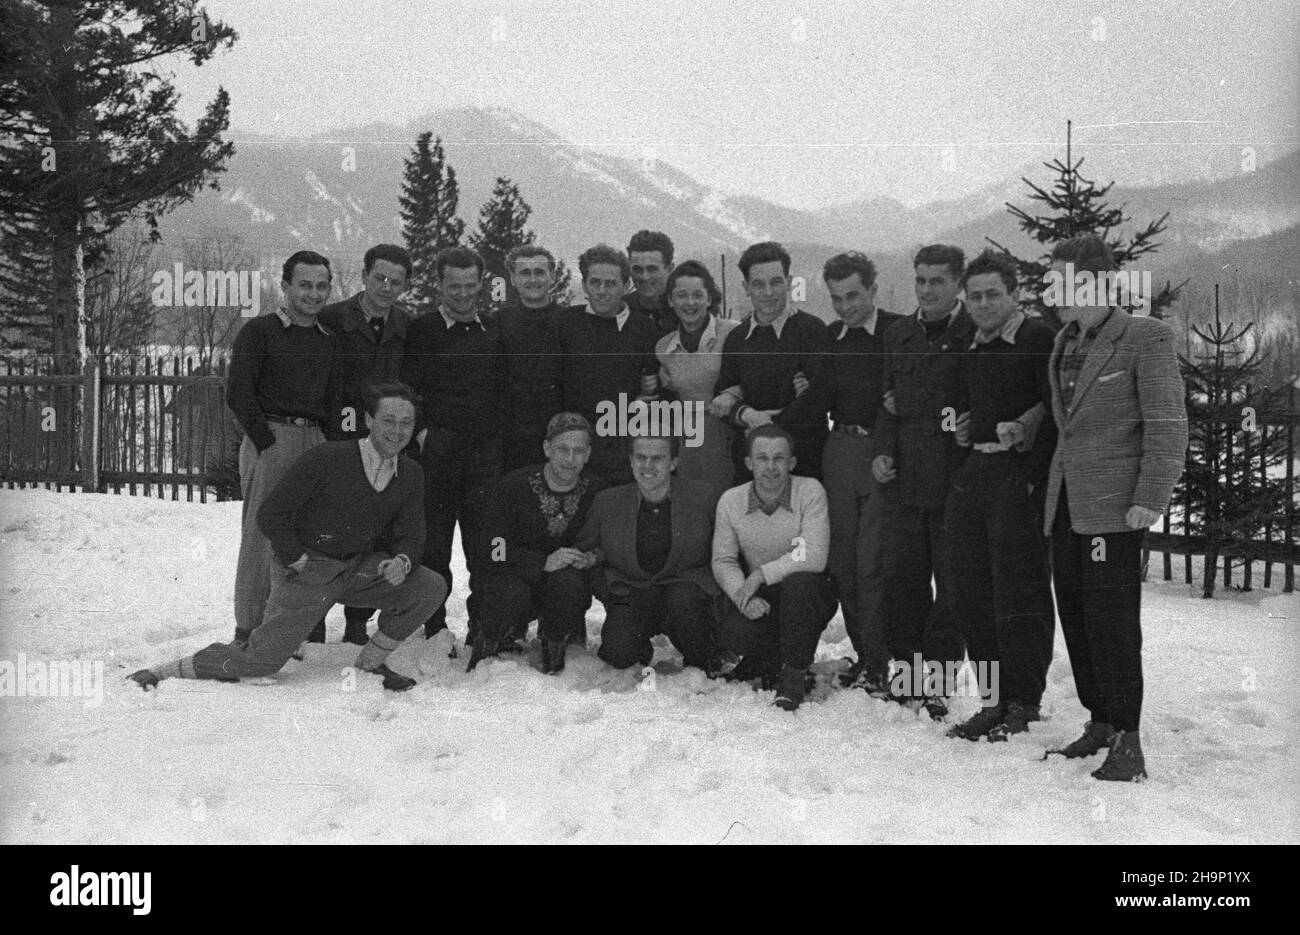 Zakopane, 1949-01. Polscy sportowcy, m.in. w pierwszym rzêdzie skoczkowie Stanis³aw Marusarz (2L) i Tadeusz Kozak (3L). Dok³adny dzieñ wydarzenia nieustalony.  bk  PAP      Zakopane, Jan. 1949. Polish sportsmen, including in the 1st row ski jumpers Stanislaw Marusarz (2nd left) and Tadeusz Kozak (3rd left).  bk  PAP Stock Photo